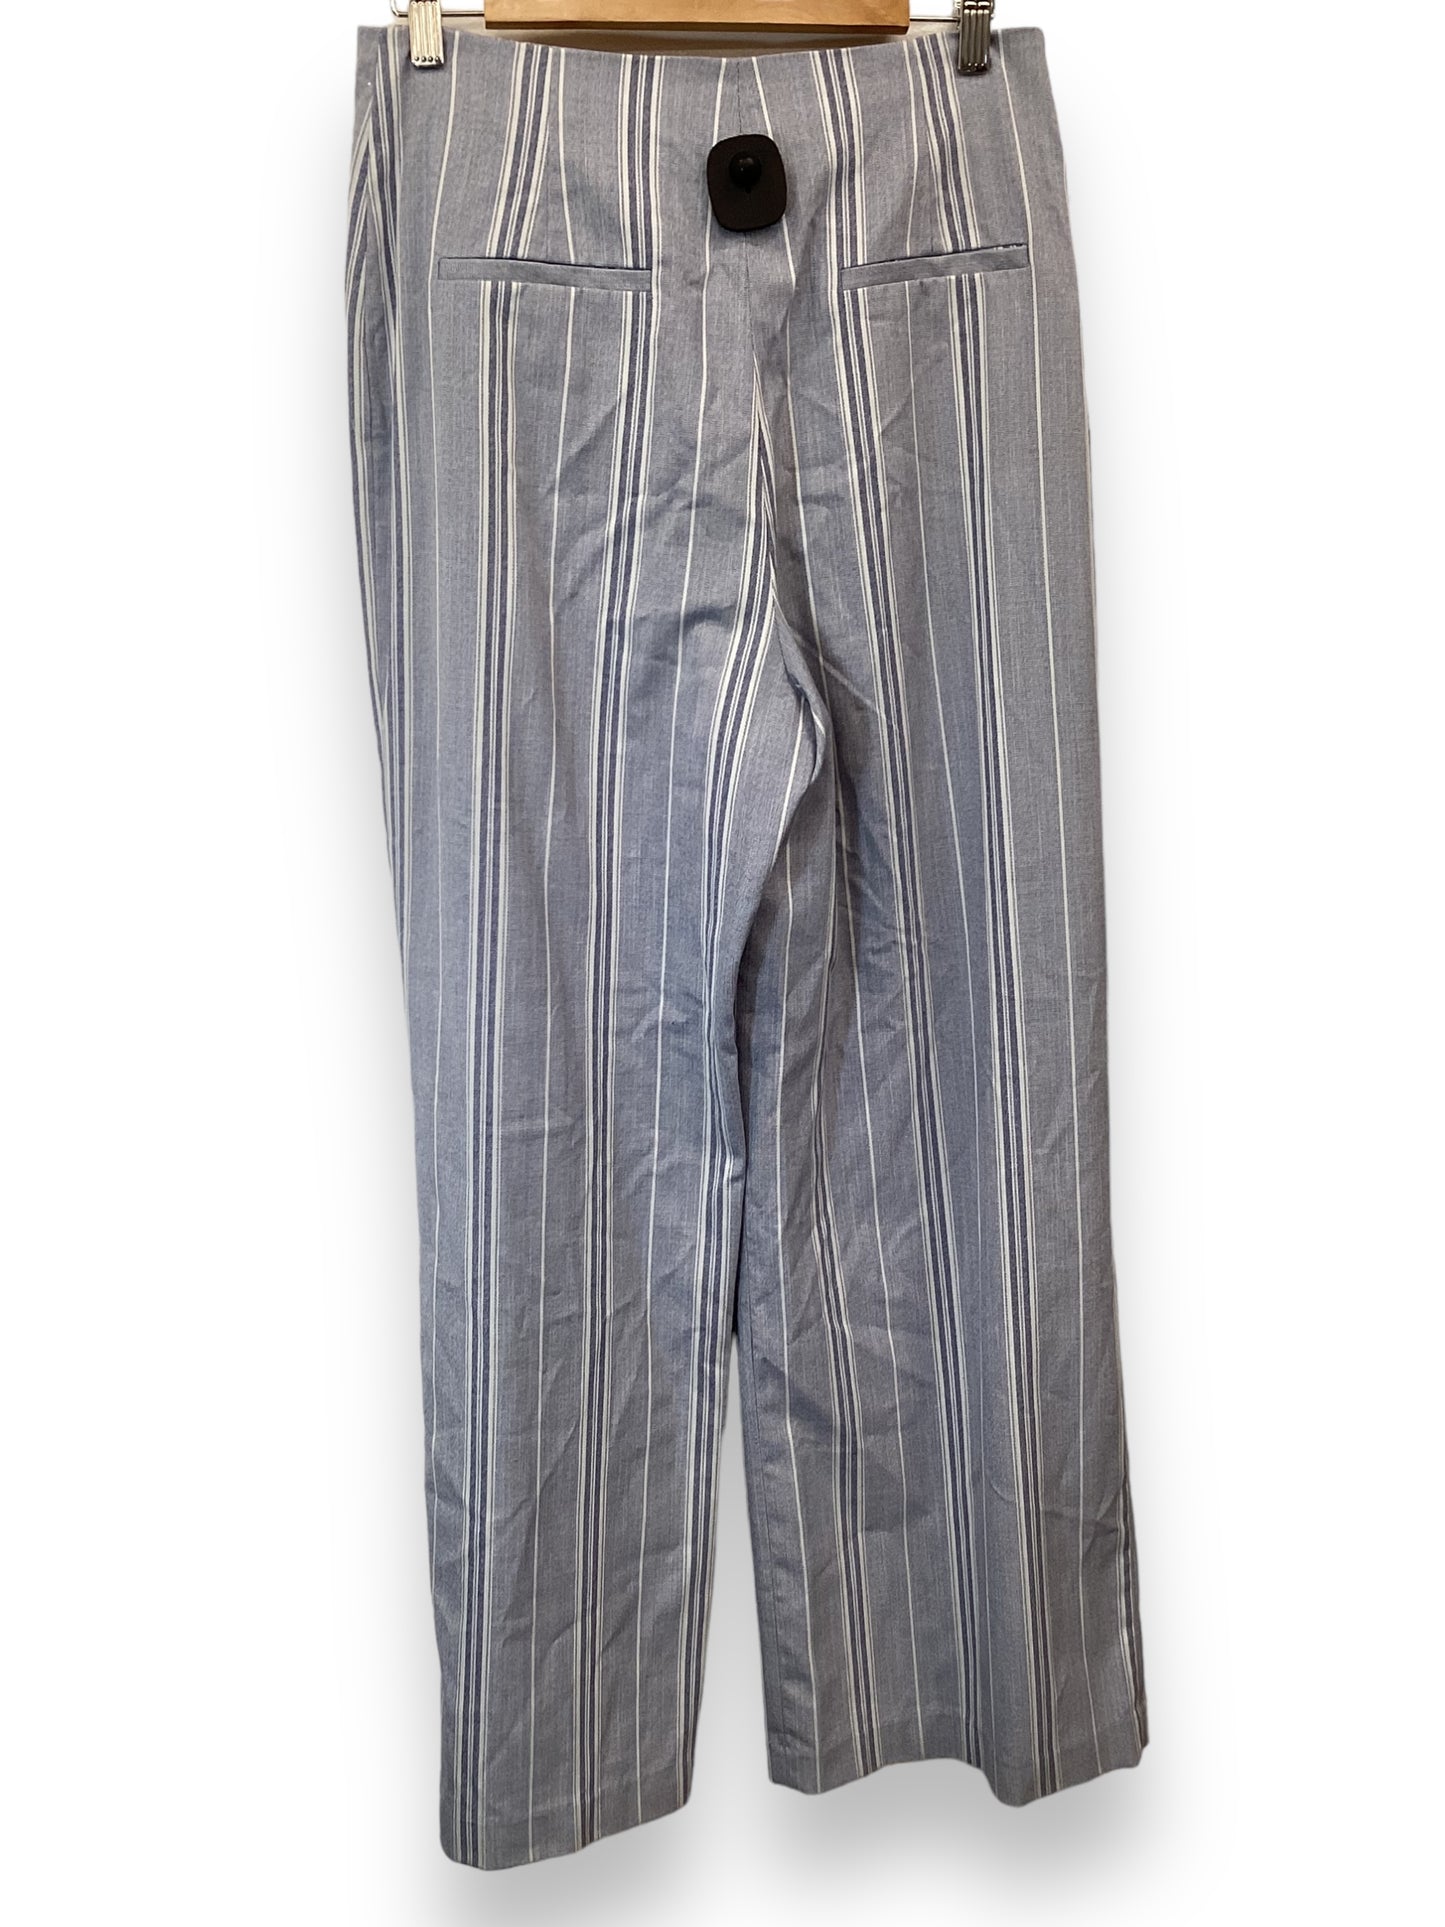 Pants Work/dress By Antonio Melani  Size: 6